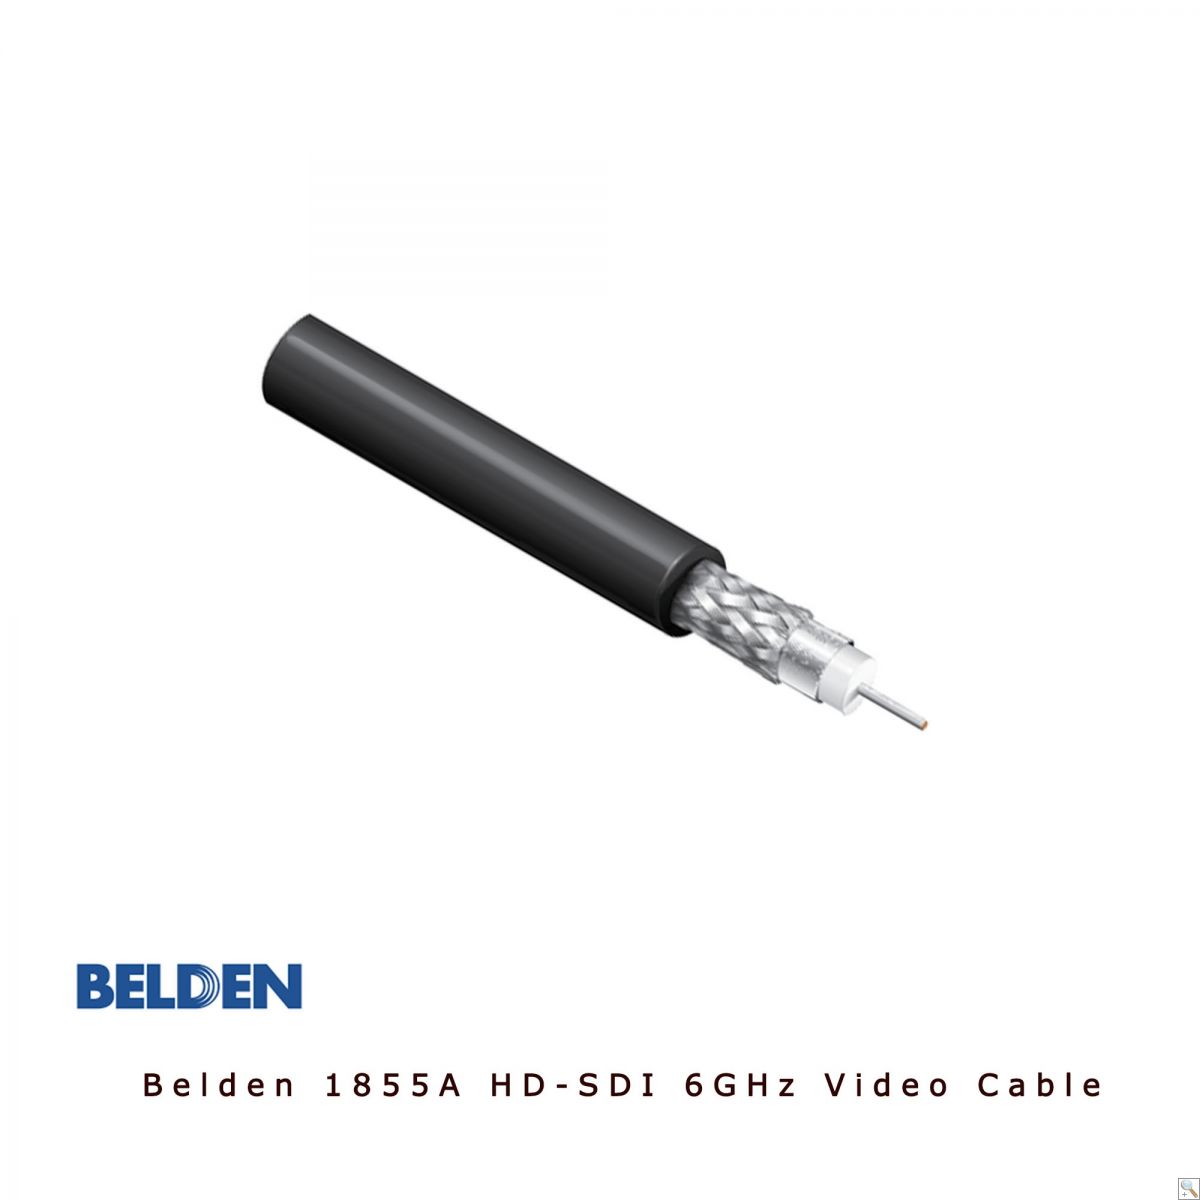 Belden 1855A - Cut Lengths